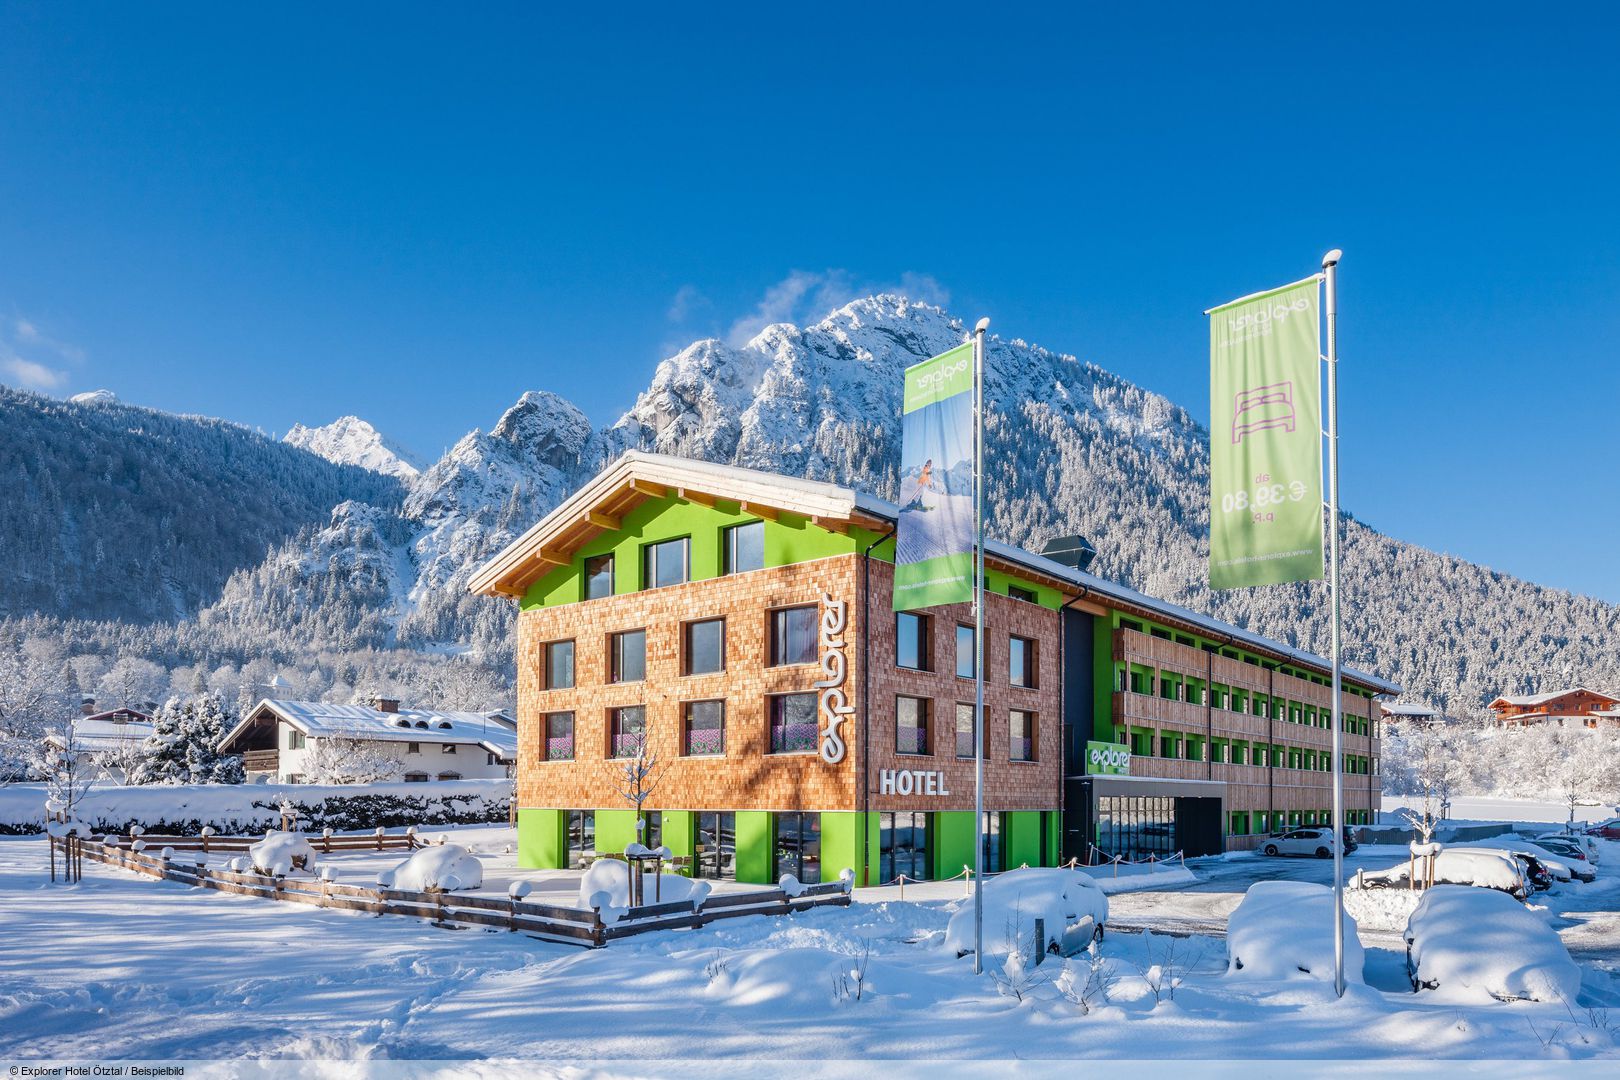 Det trendy Explorer Hotel Garmisch ligger ca. 5,4 km fra centrum af Garmisch-Patenkirchen. Skiområdet Garmisch-Classic med Zugspitze nås efter ca. 7 km, og der er et skibusstoppested ca. 100 m fra hotellet. Indstigningen til langrendsløjpen er mulig efter ca. 500 m. Faciliteter Indkvarteringen, der åbnede i 2022, har reception, elevator, Wi-Fi, opholds- og morgenmadsrum, bar, skikælder, parkeringspladser og en parkeringsgarage (begge mod betaling og hvis ledig). Som hotellets gæst har man mulighed for at benytte wellnessområdet med sauna, dampbad, infrarødkabine og fitnessrum (for åbningstider, se opslag på destinationen). Forplejning I rejseprisen er der allerede inkluderet den daglige morgenmadsbuffet, på forespørgsel fås der gluten- og laktosefrie alternativer.